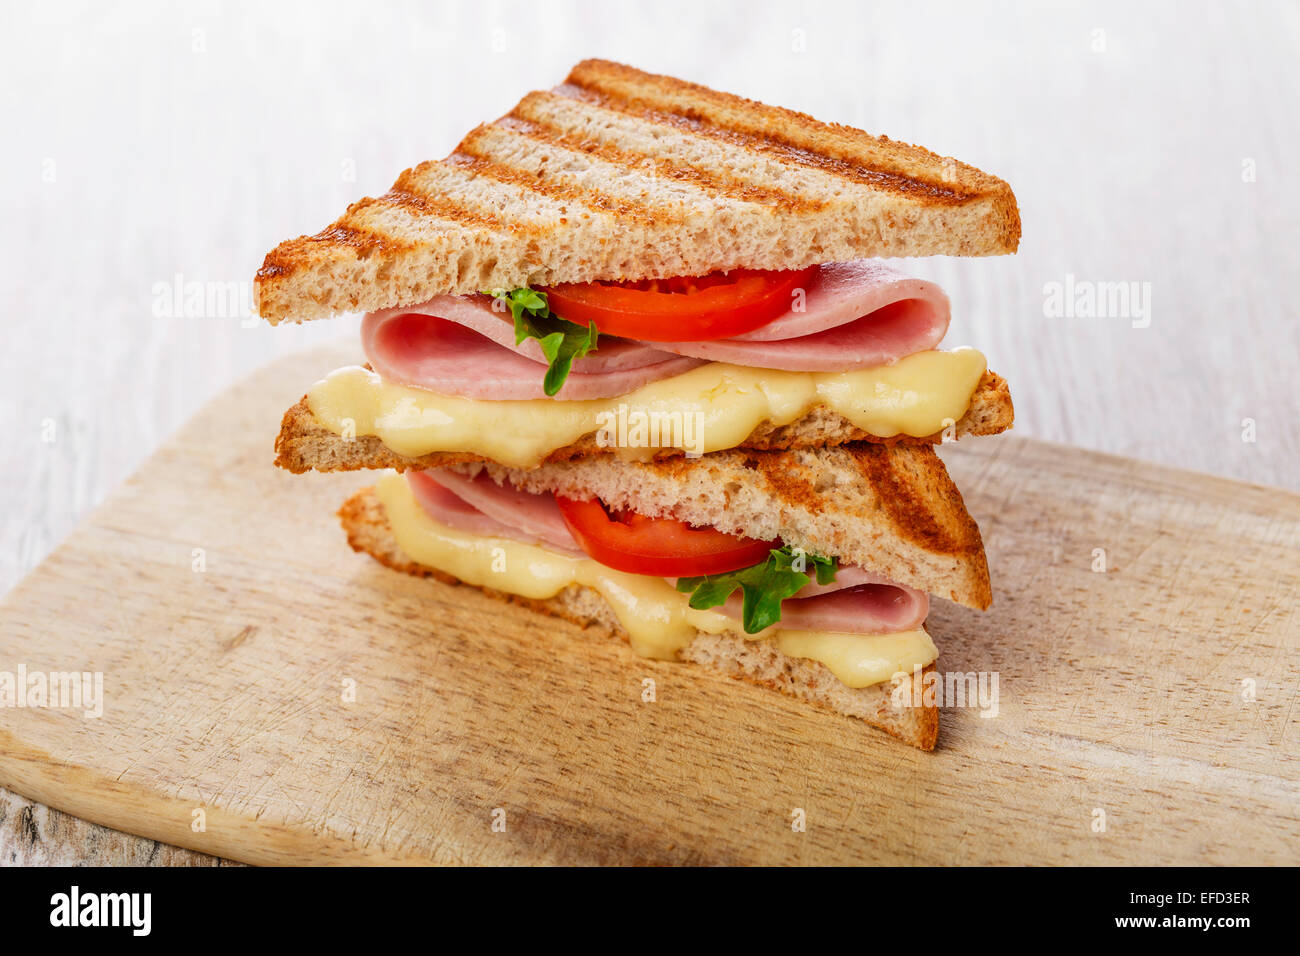 Sandwich Toast mit Käse, Tomaten und Schinken gegrillt Stockfotografie ...